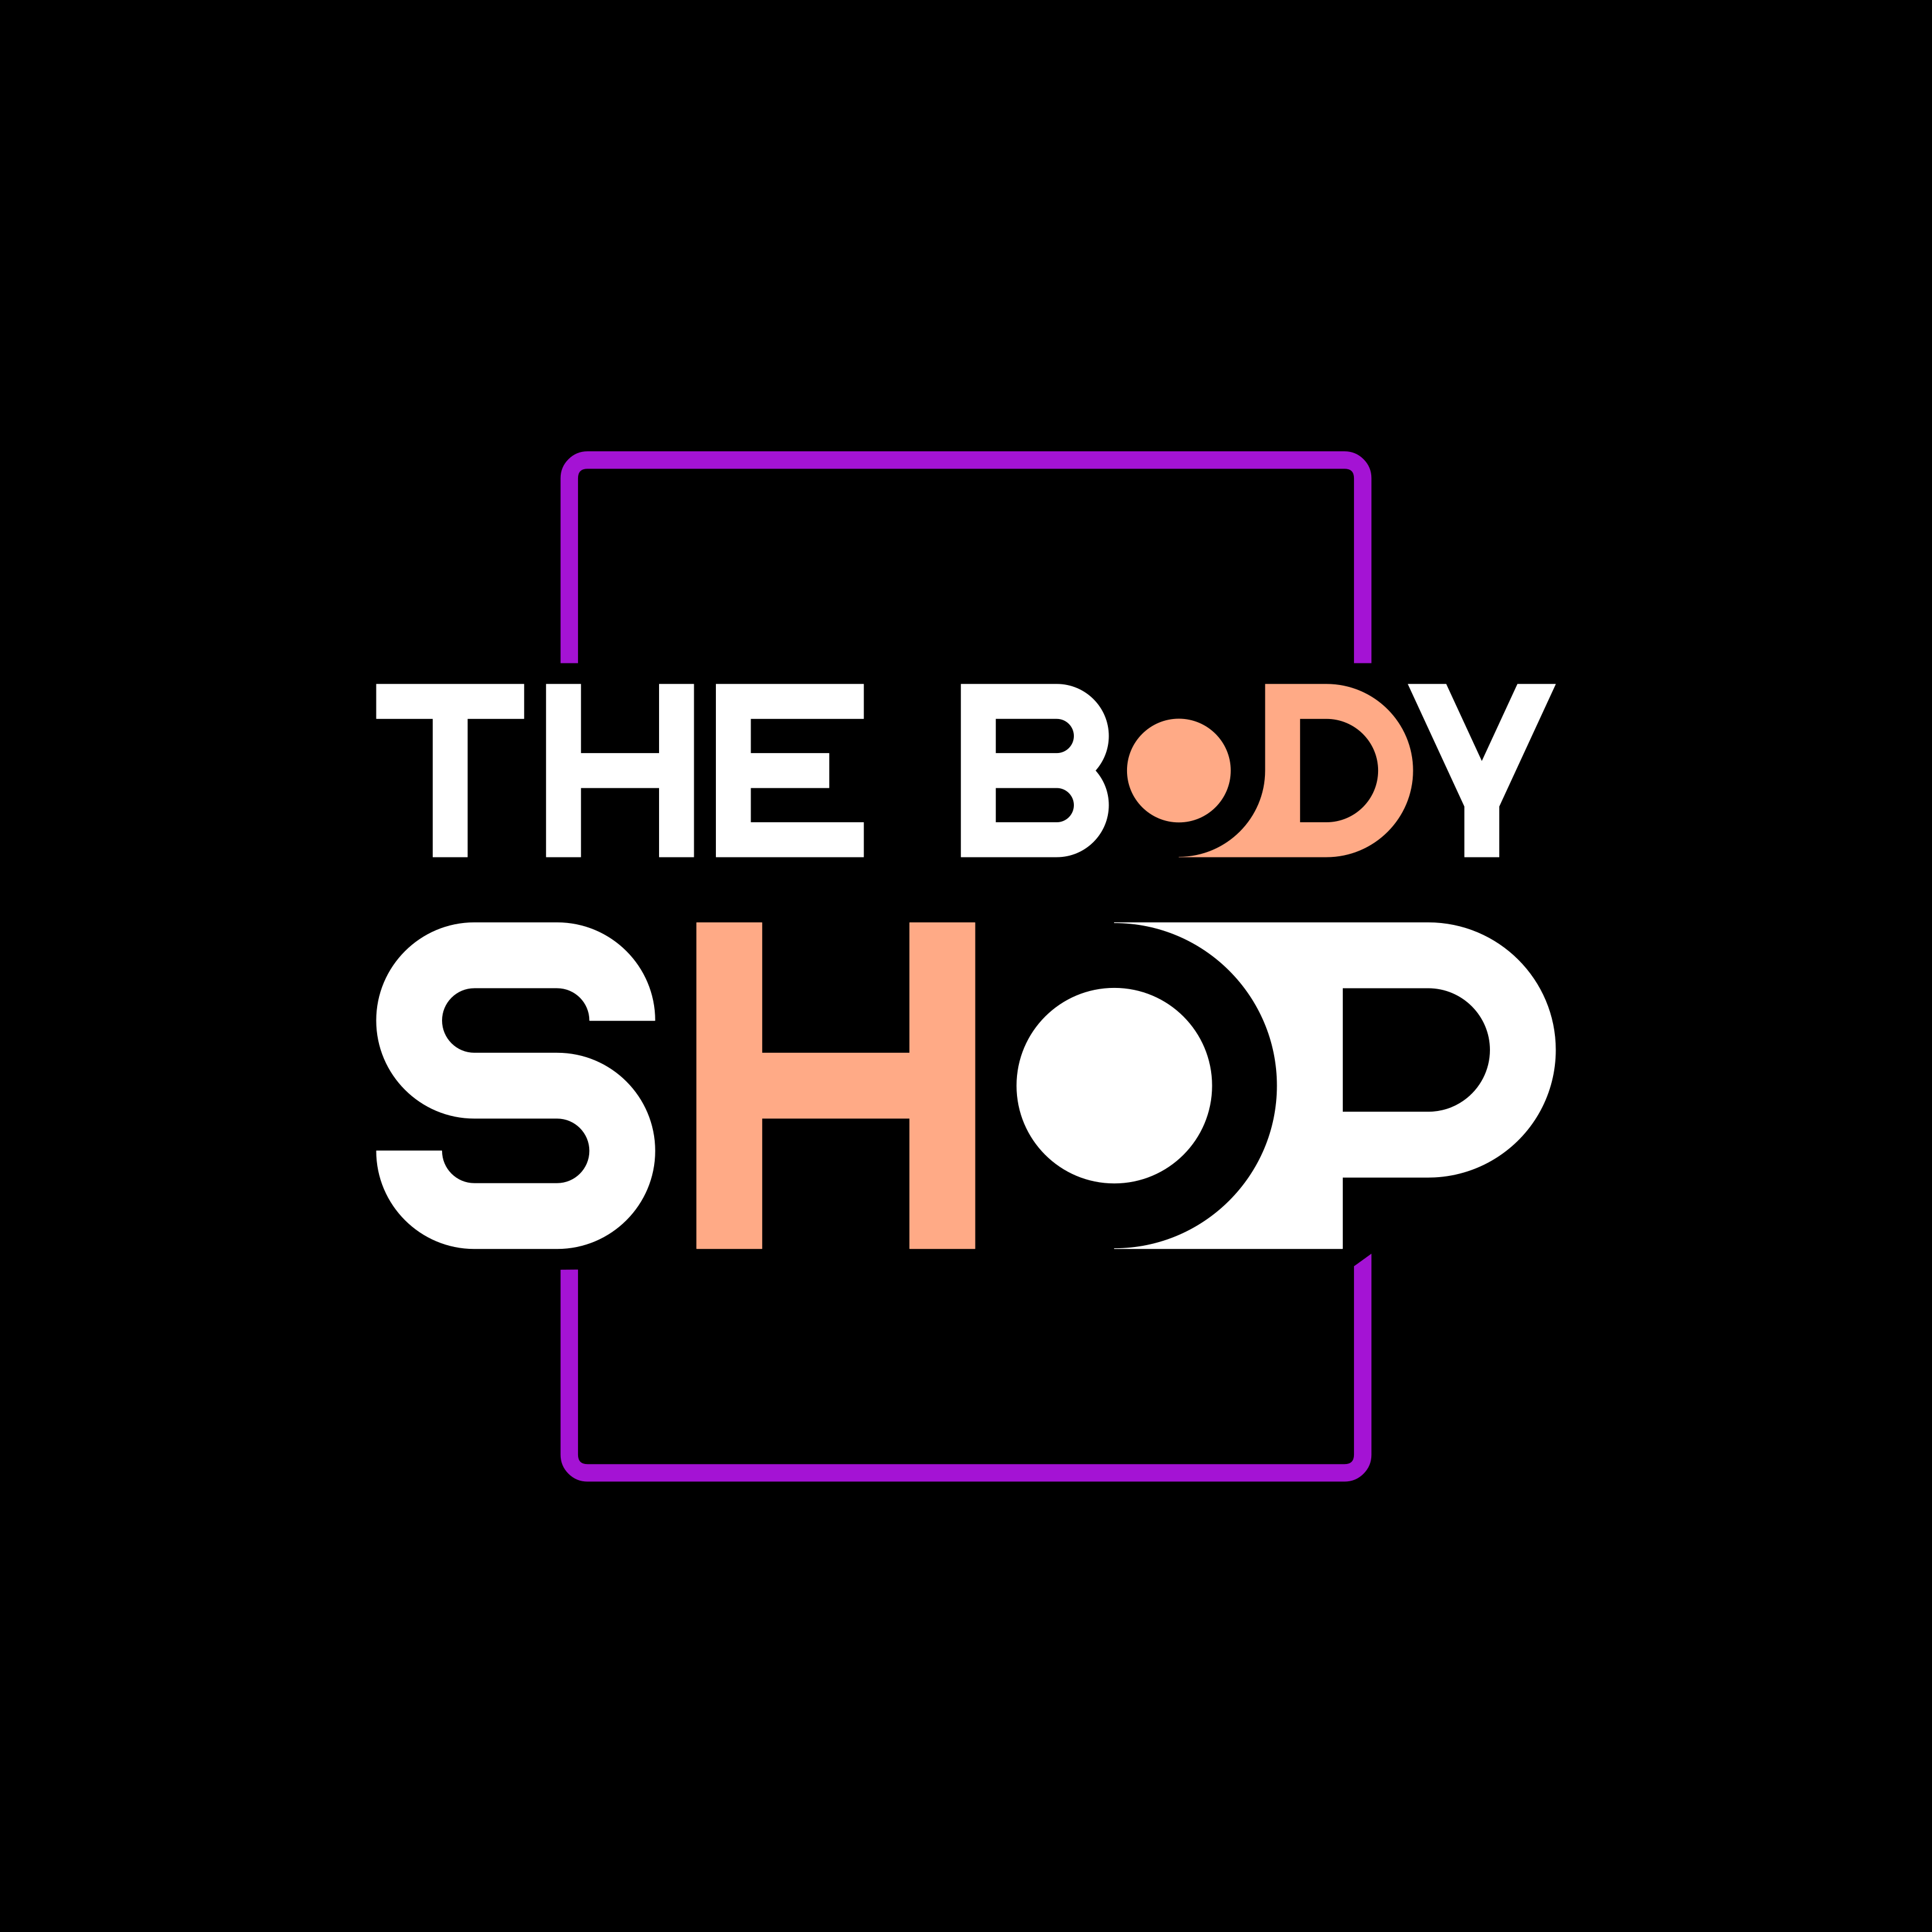 The Body Shop By Hawt Rebel